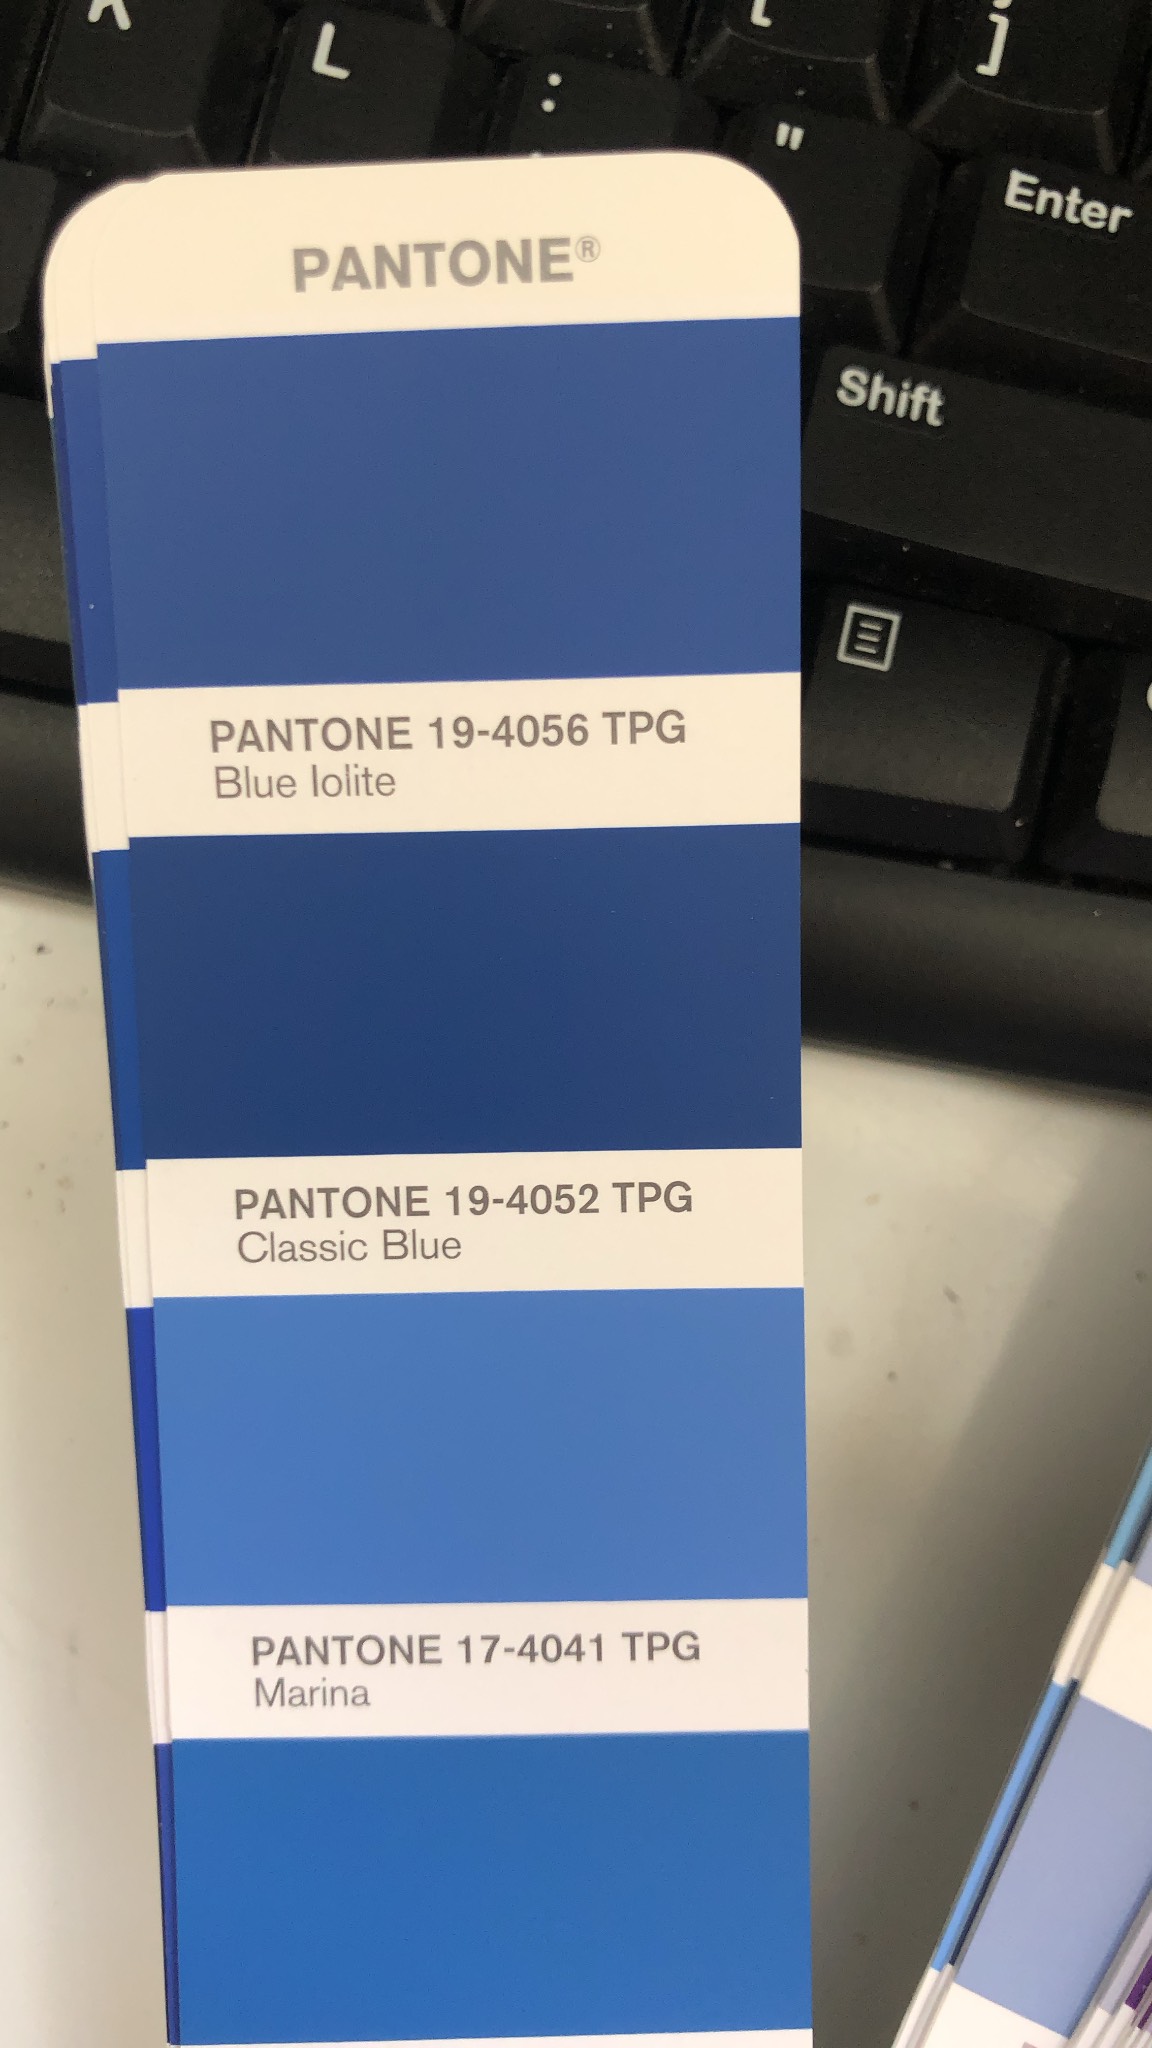 Bộ 2 thanh Bảng màu Pantone TPG FHIP110A 2020 Fashion Home Interiors chính hãng PANTONE LLC nhập khẩu từ USA - 2625 màu TPG dành cho ngành thời trang, nhà ở, nội thất